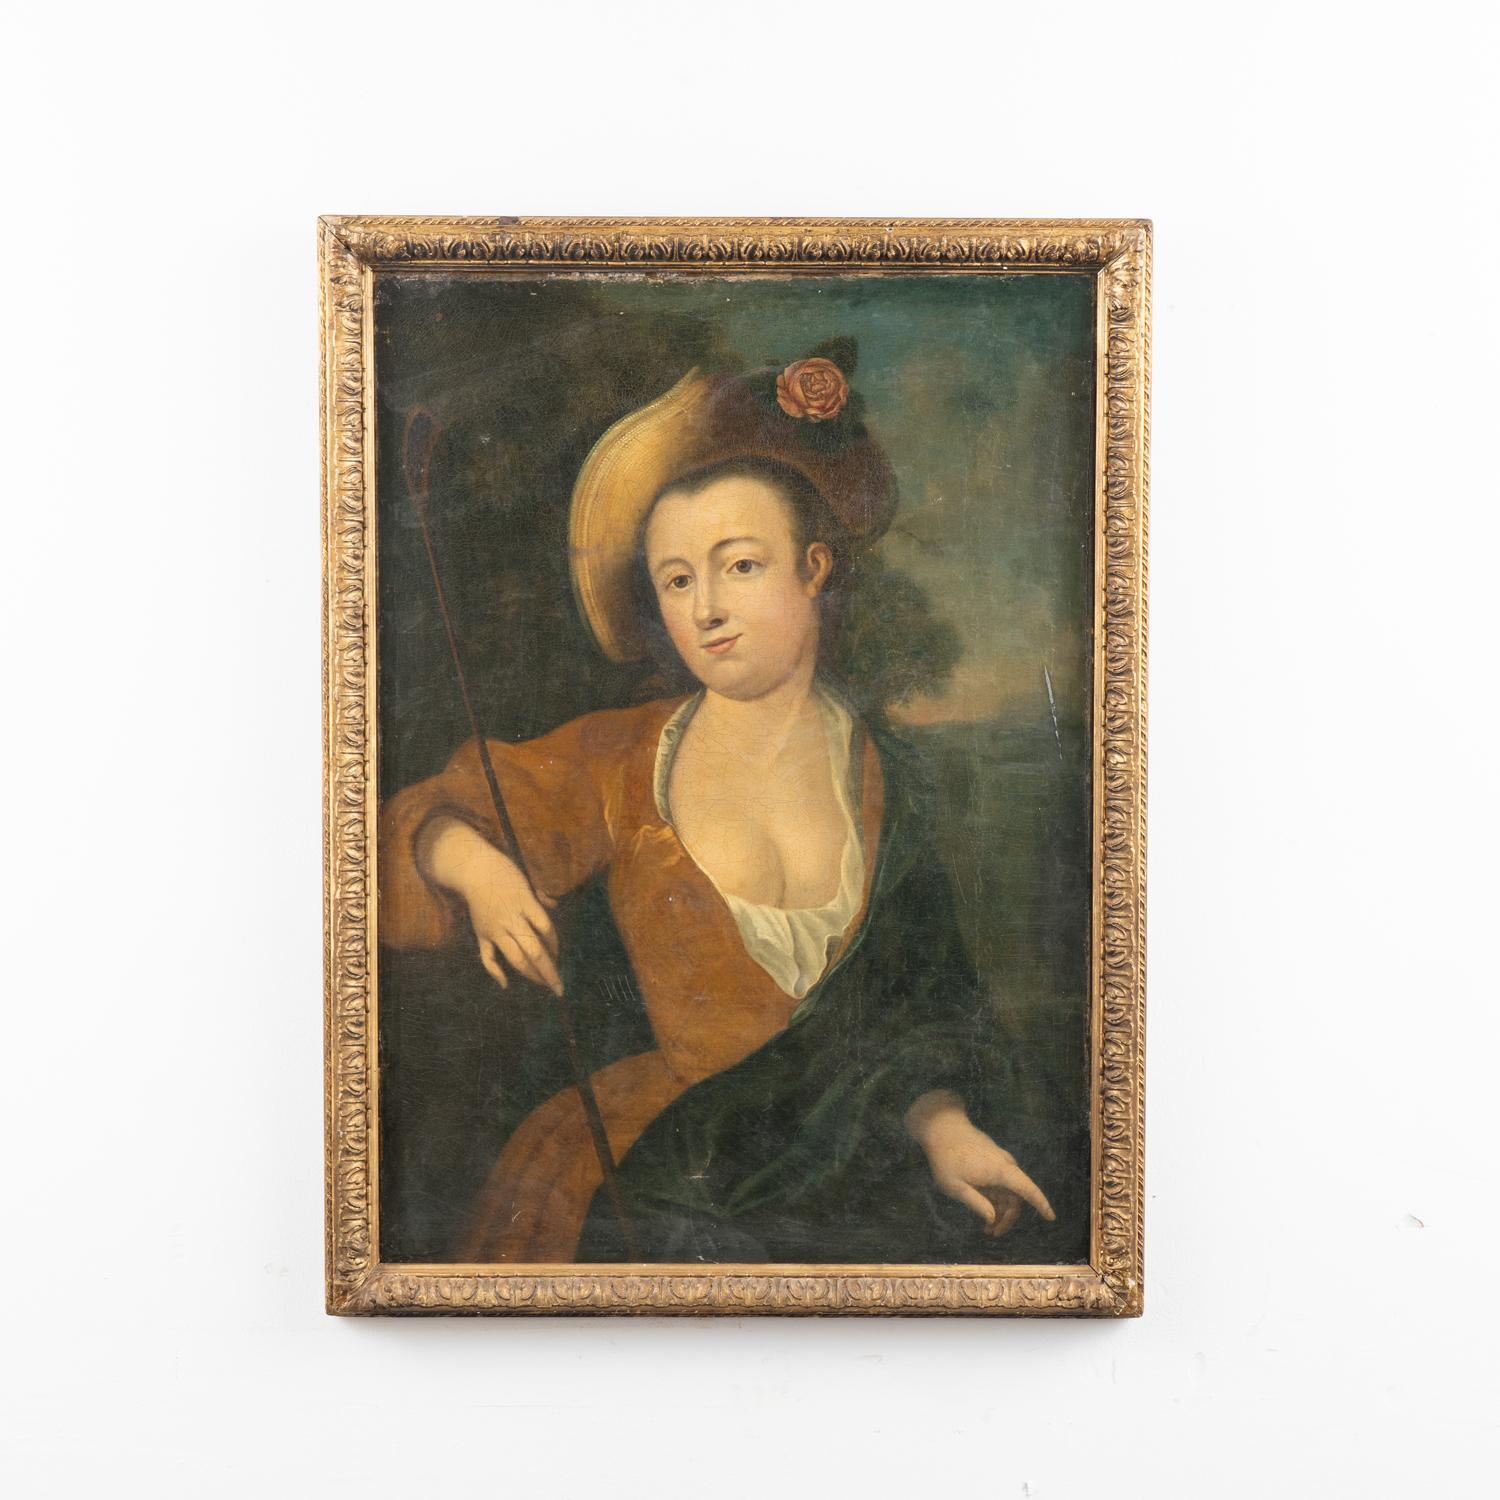 Portrait original à l'huile sur toile d'une dame avec chapeau et cravache.
Artiste inconnu, vers les années 1700.
Usure importante, craquelures sur l'ensemble. Taches, perte de peinture, rayures.
Ébréchures, rayures et abrasions typiques liées à